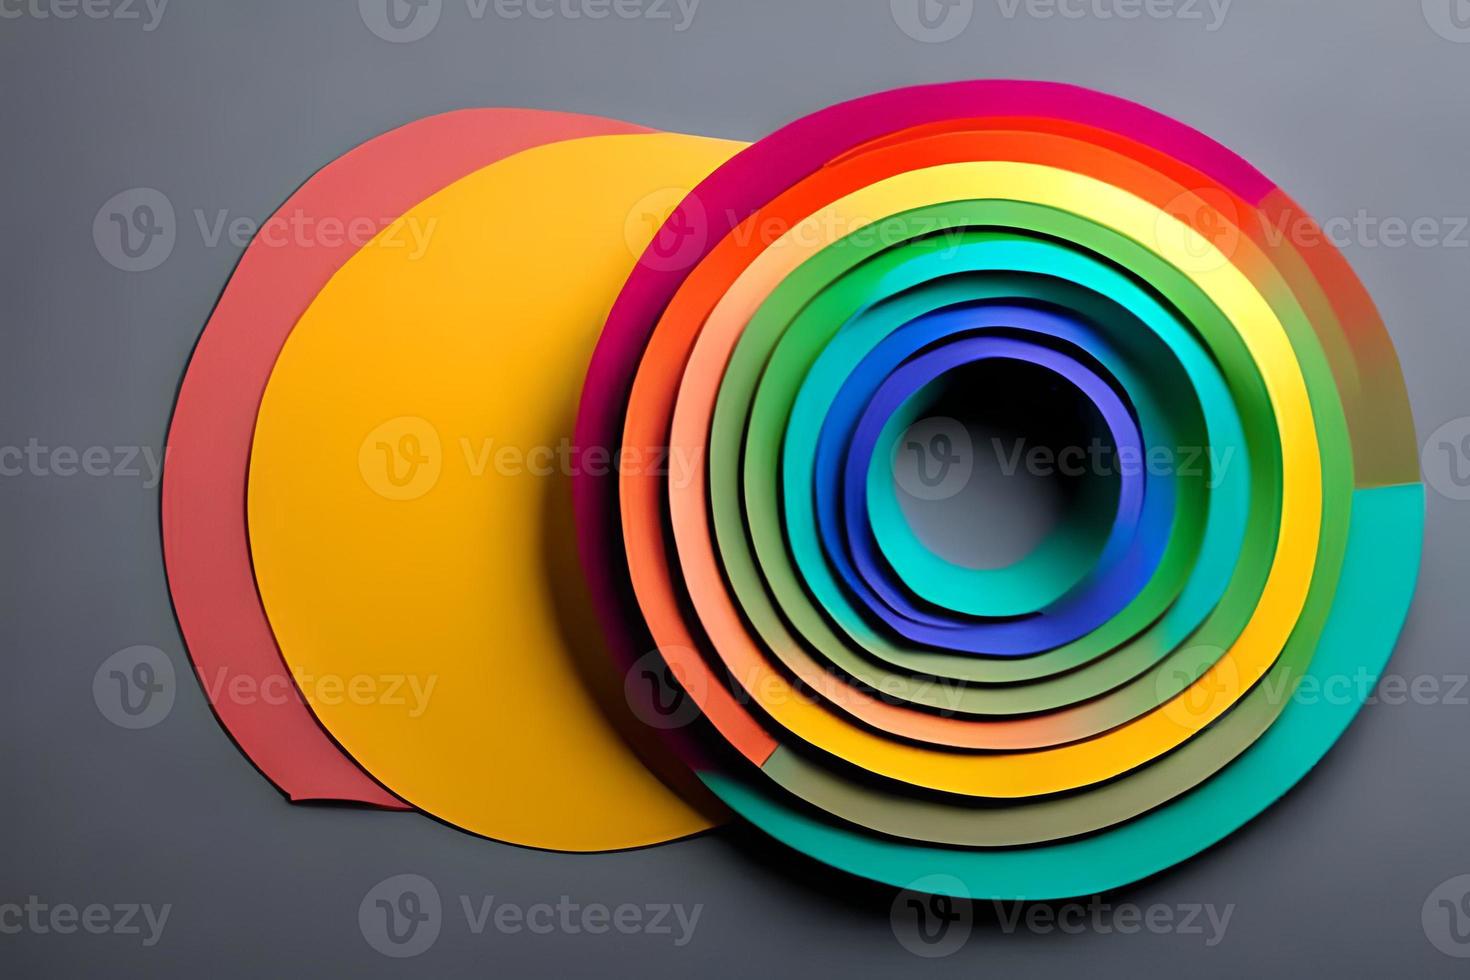 regenboog kleurrijk papier cirkel achtergrond. sjabloon illustratie voor ontwerp materiaal, element en achtergrond. foto